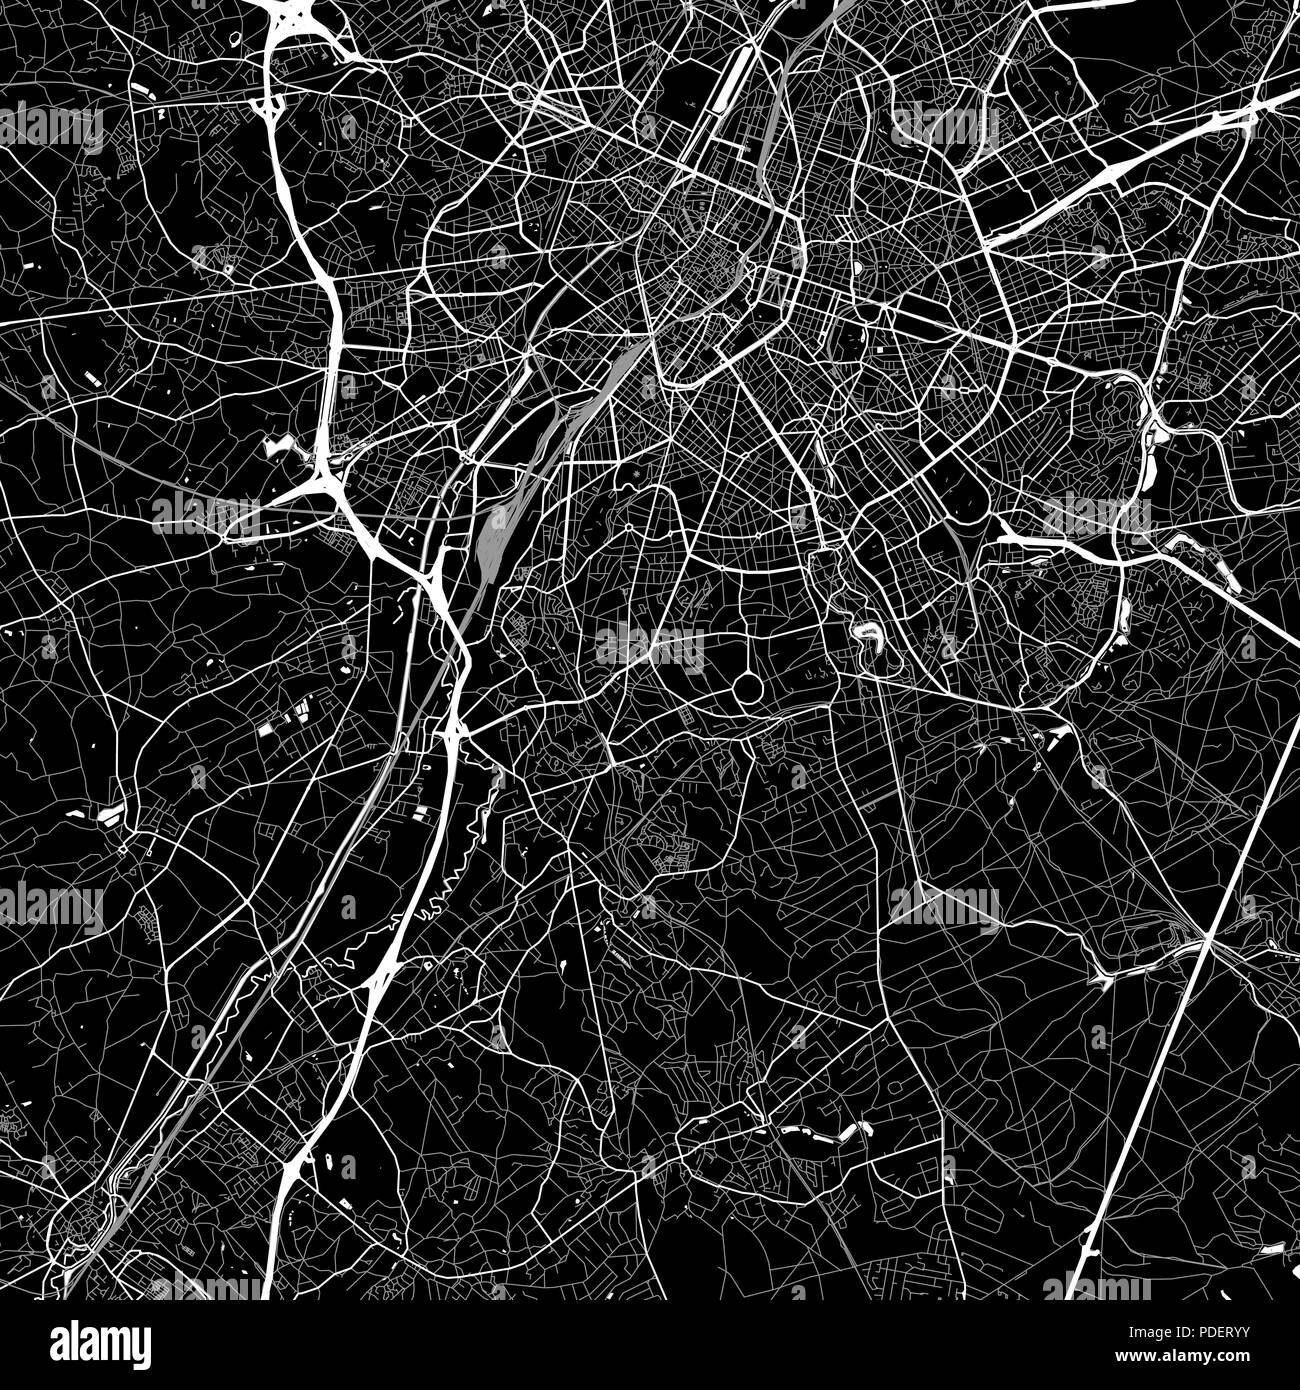 Lageplan von Uccle, Belgien. Der dunkle Hintergrund Version für Infografik und Marketing. Diese Karte von Uccle, Region Brüssel-Hauptstadt, enthält Straßen, wat Stock Vektor